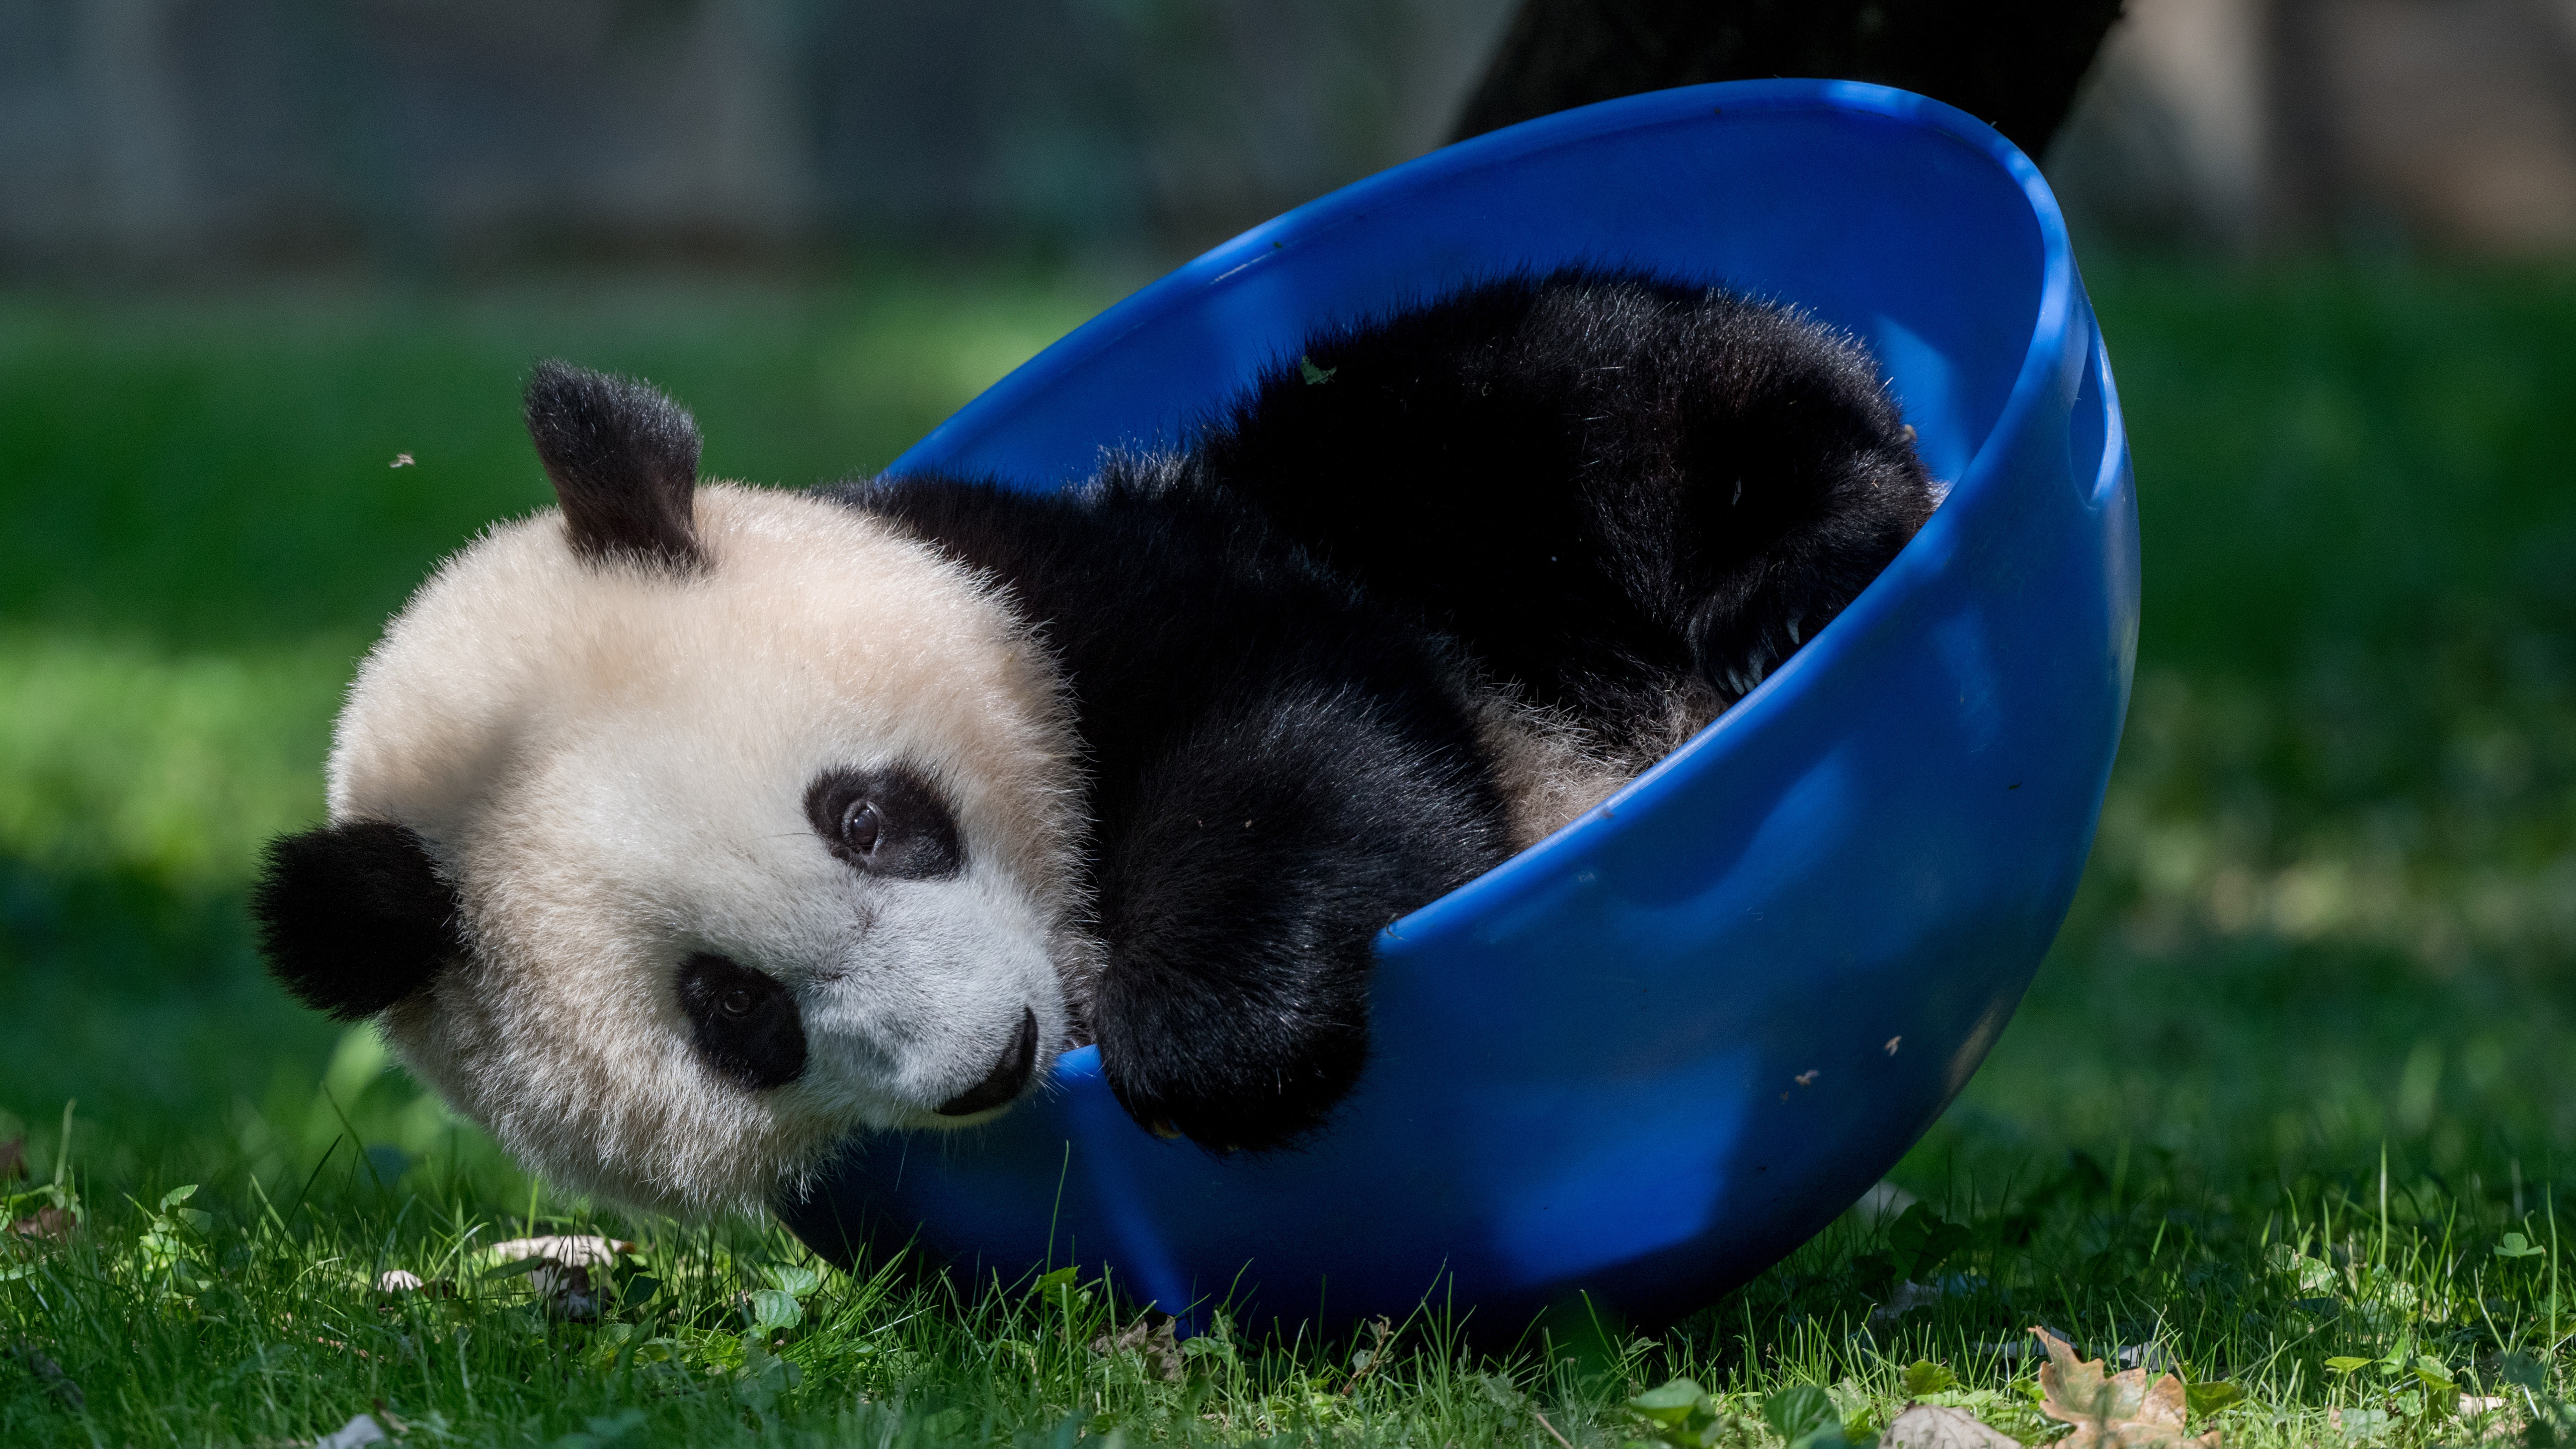 Бесплатное фото Озорной детеныш панды играет с синим тазиком